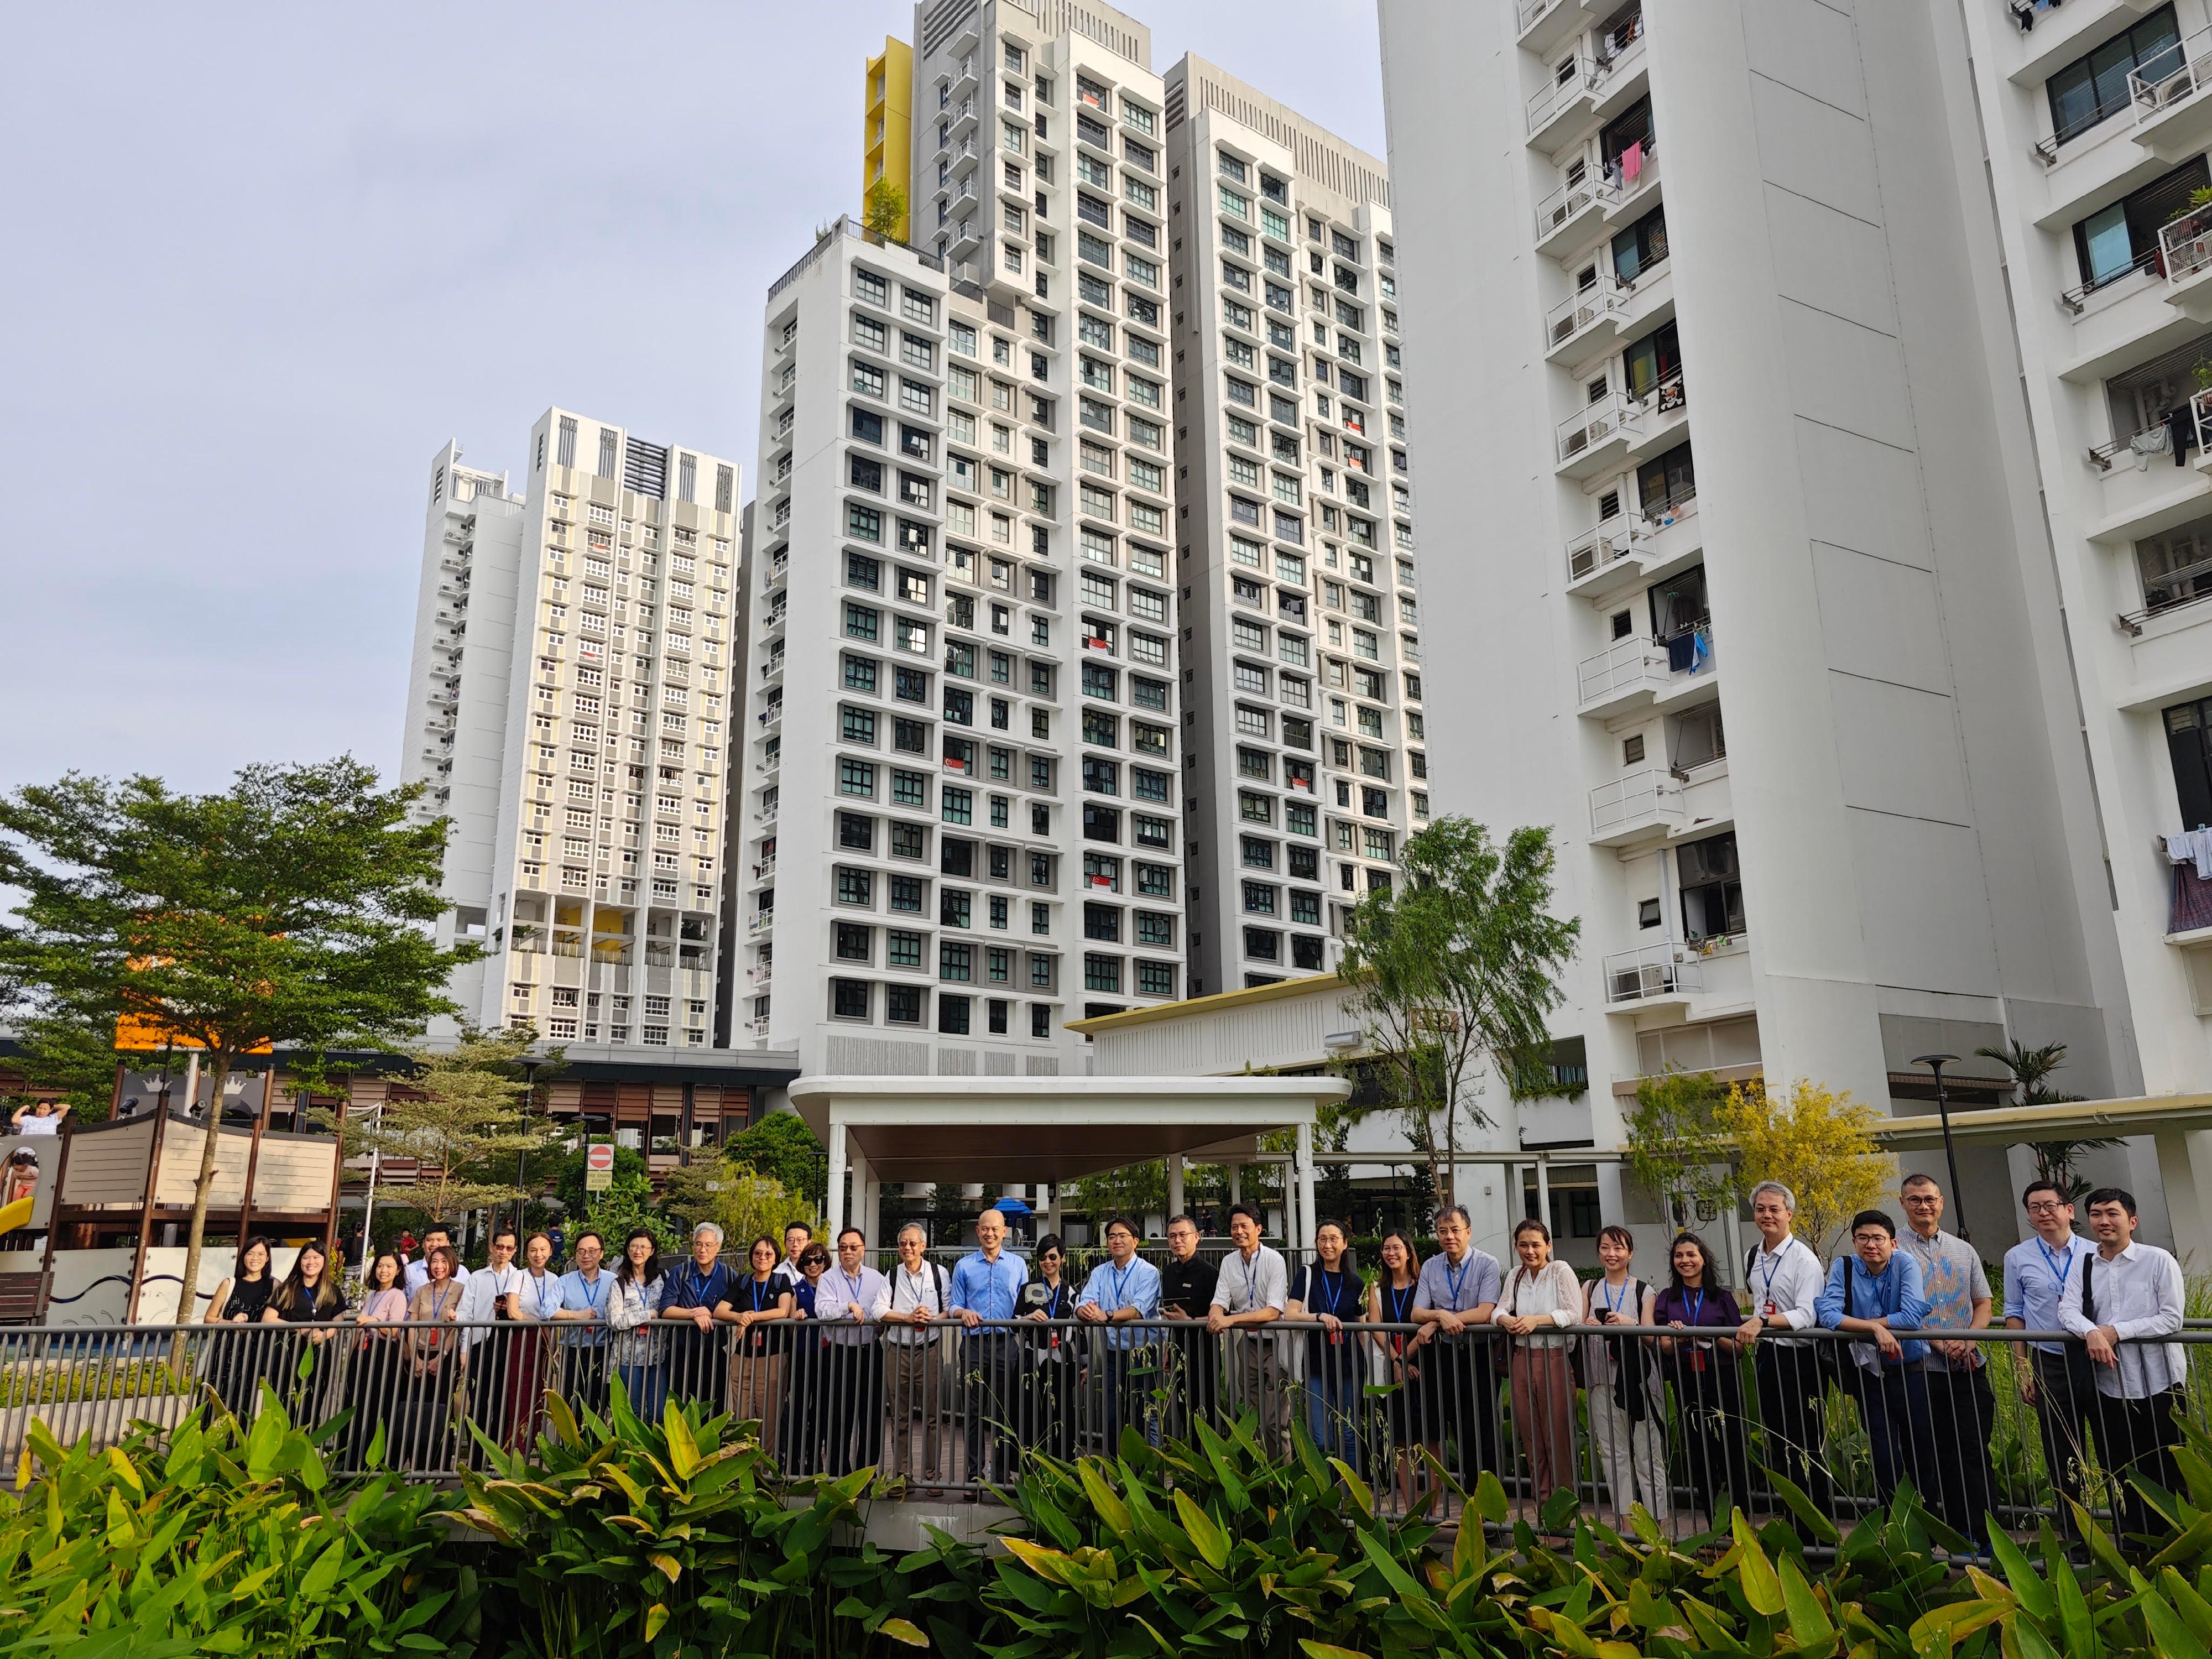 房屋局局長何永賢昨日（八月二十二日）展開在新加坡的訪問行程，與當地官員會面，就房屋政策、創新建築科技、綠色建築等領域交流意見。圖示何永賢（中）今日（八月二十三日）到榜鵝生態鎮參觀。